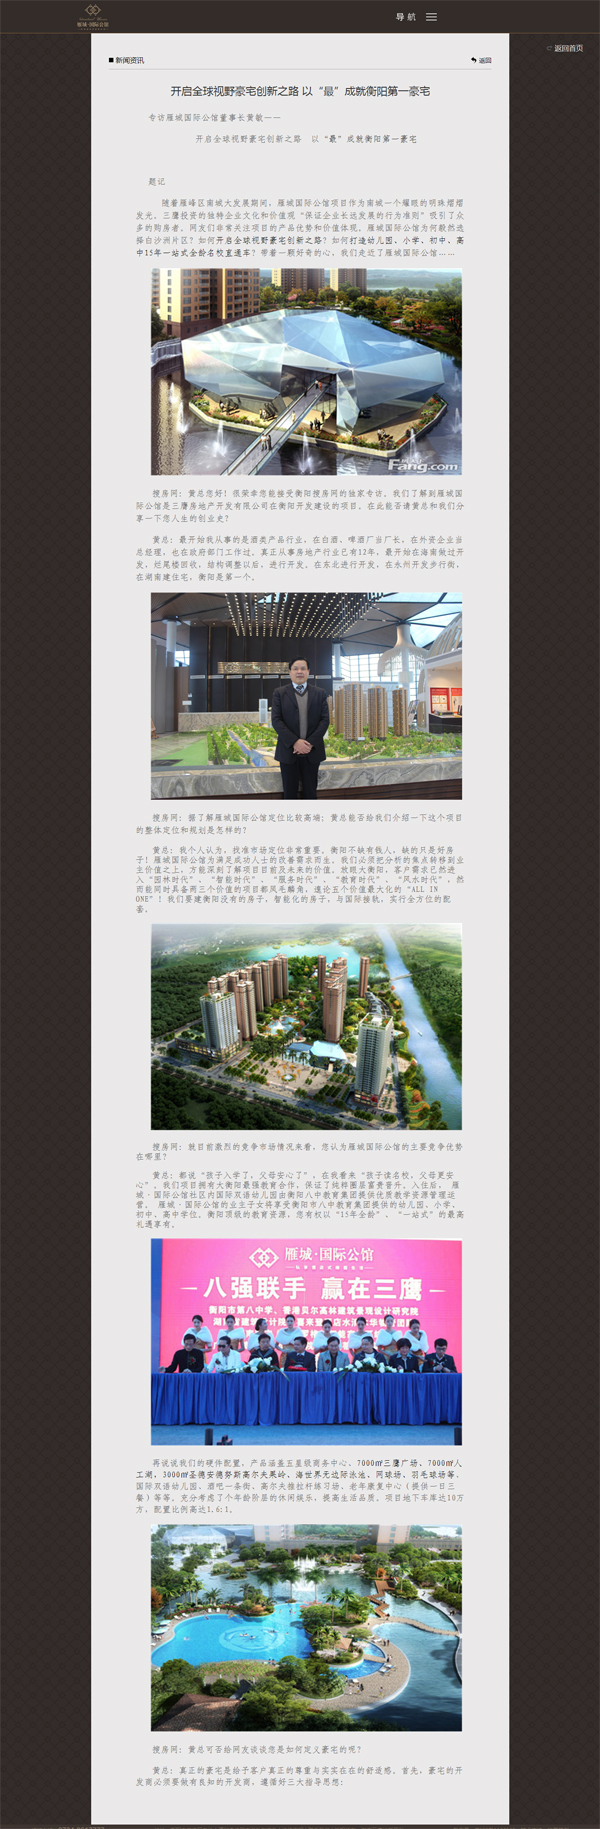 深圳市牧星策划设计有限公司衡阳雁城国际公馆：新闻资讯